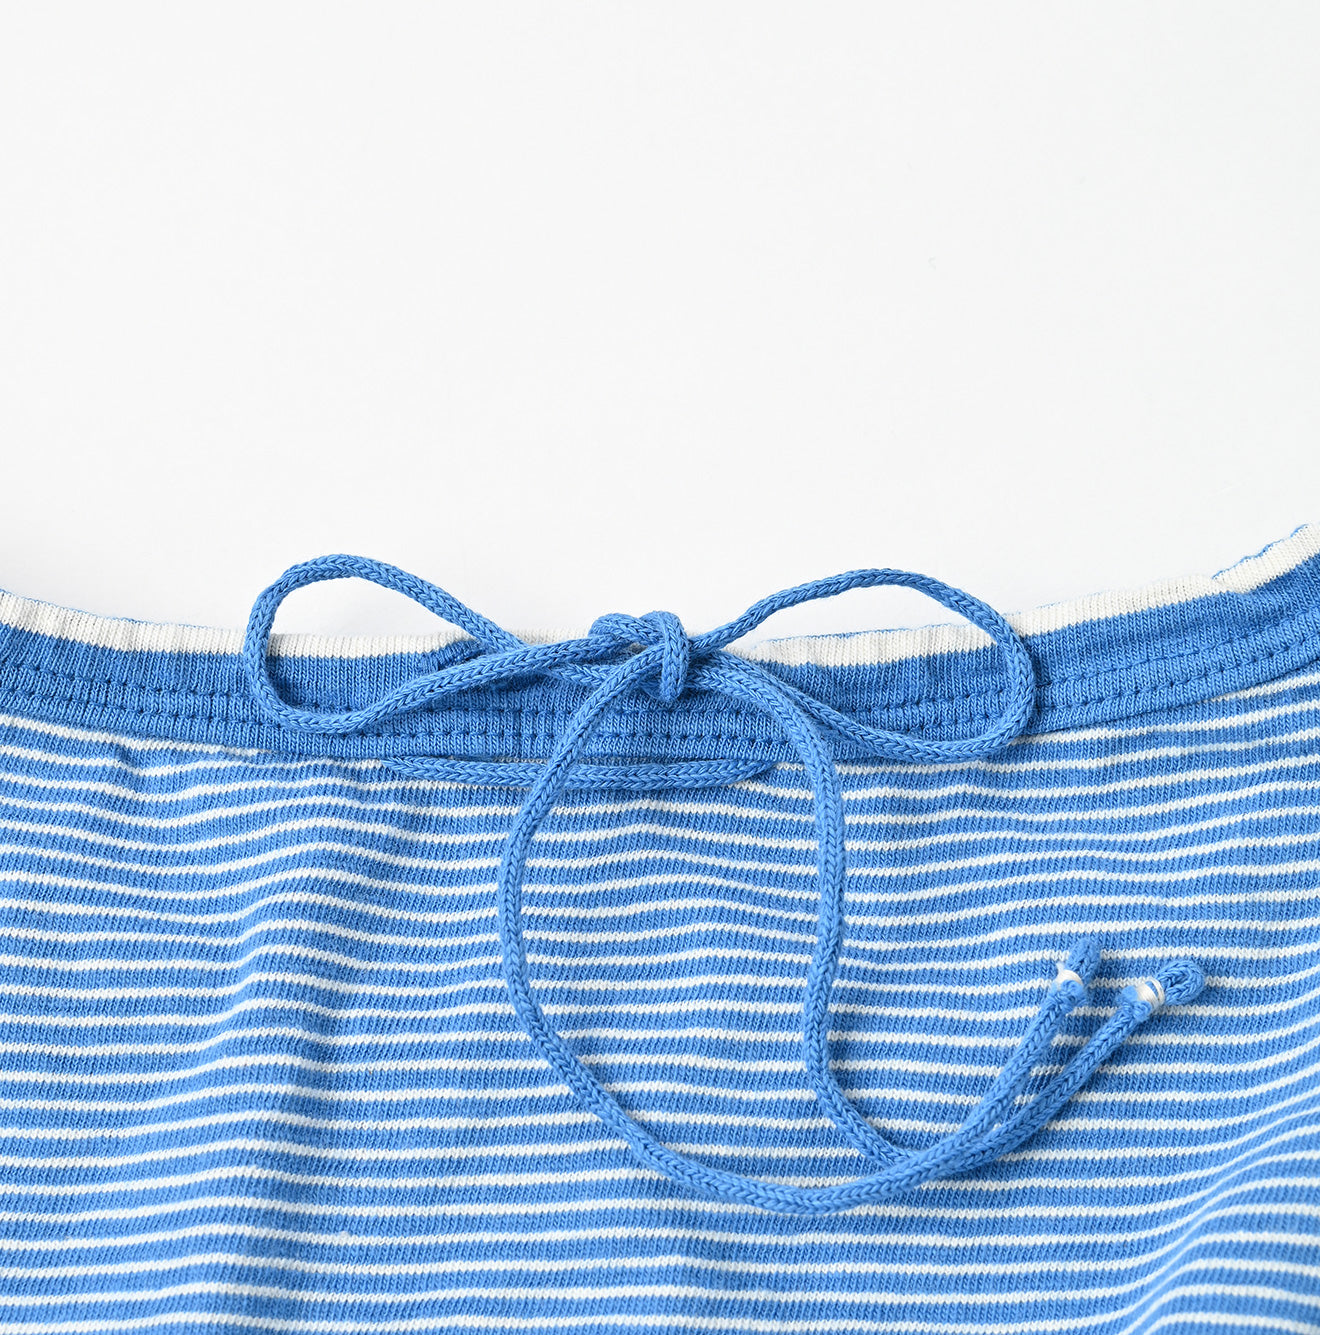 Stripe Tenjiku Dress (size 4)